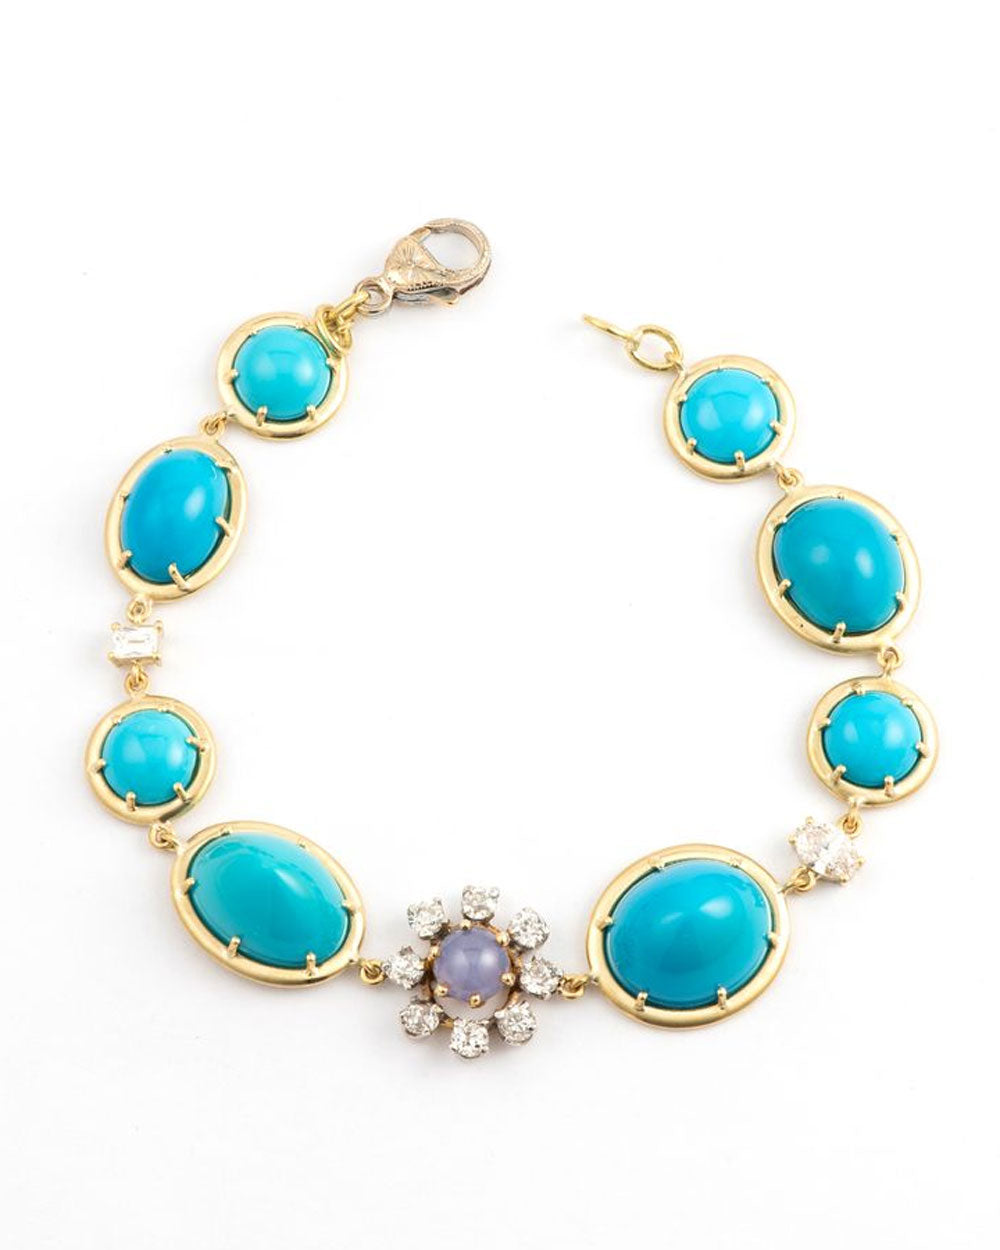 Vintage Turquoise and Diamond Tennis Bracelet